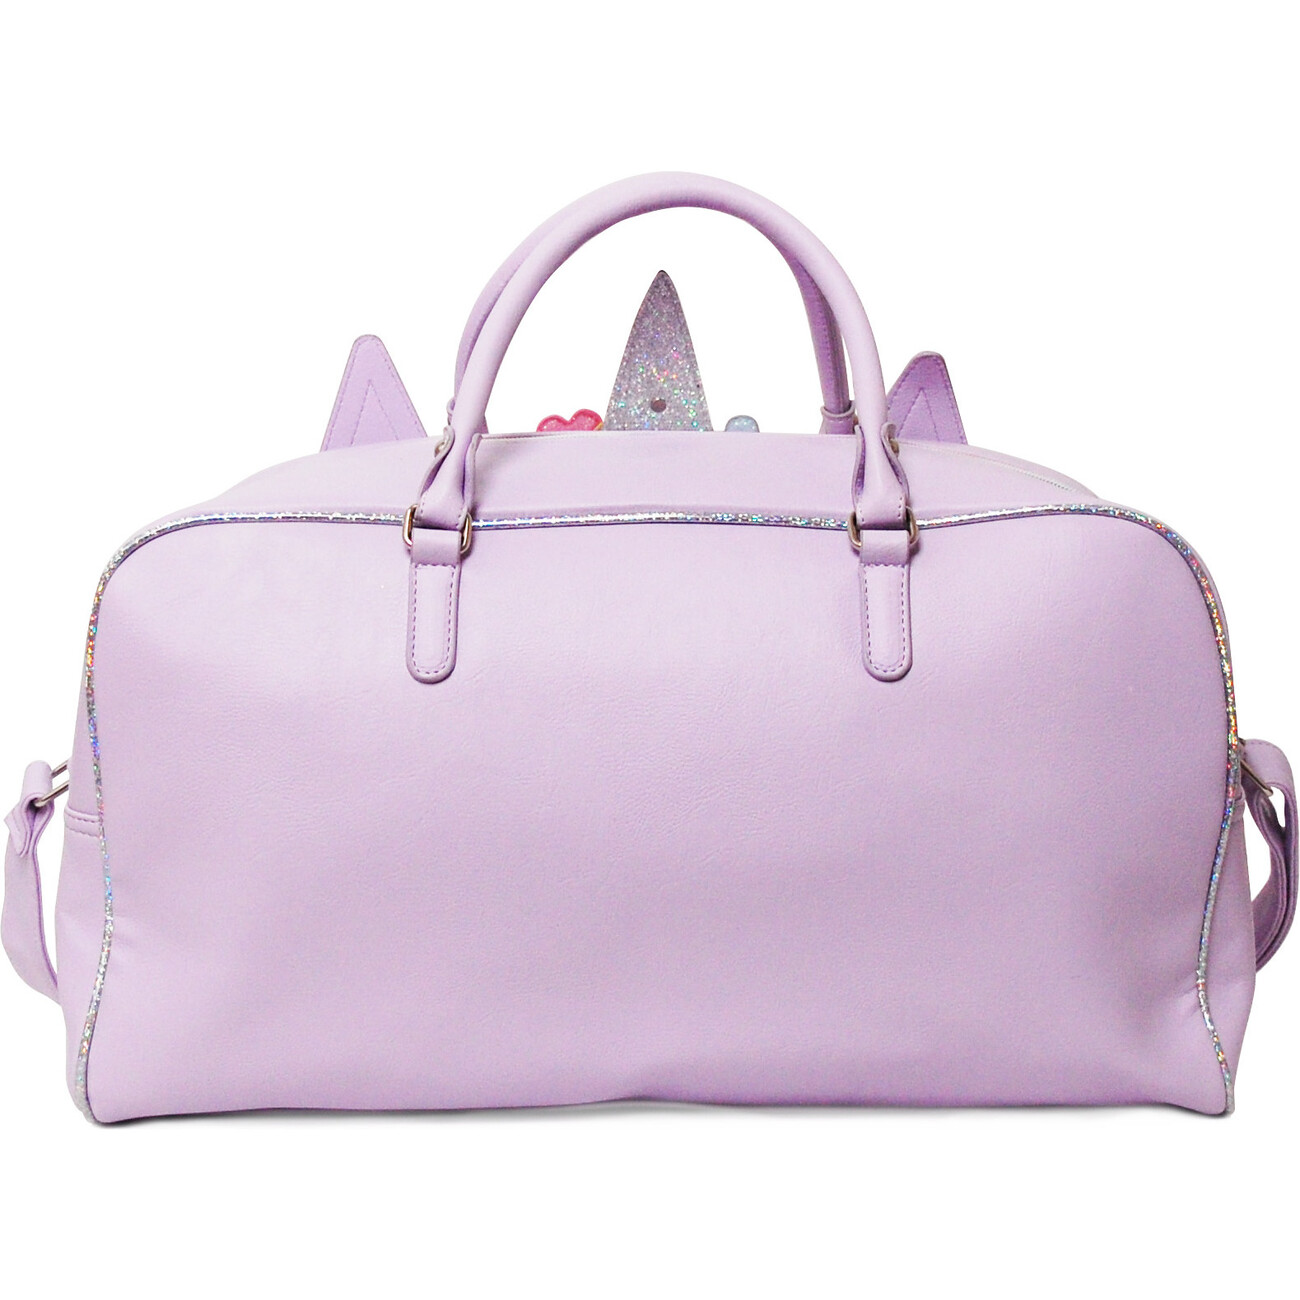 OMG Accessories Miss Gwen Flower Crown Medium Duffle Bag in Lavender